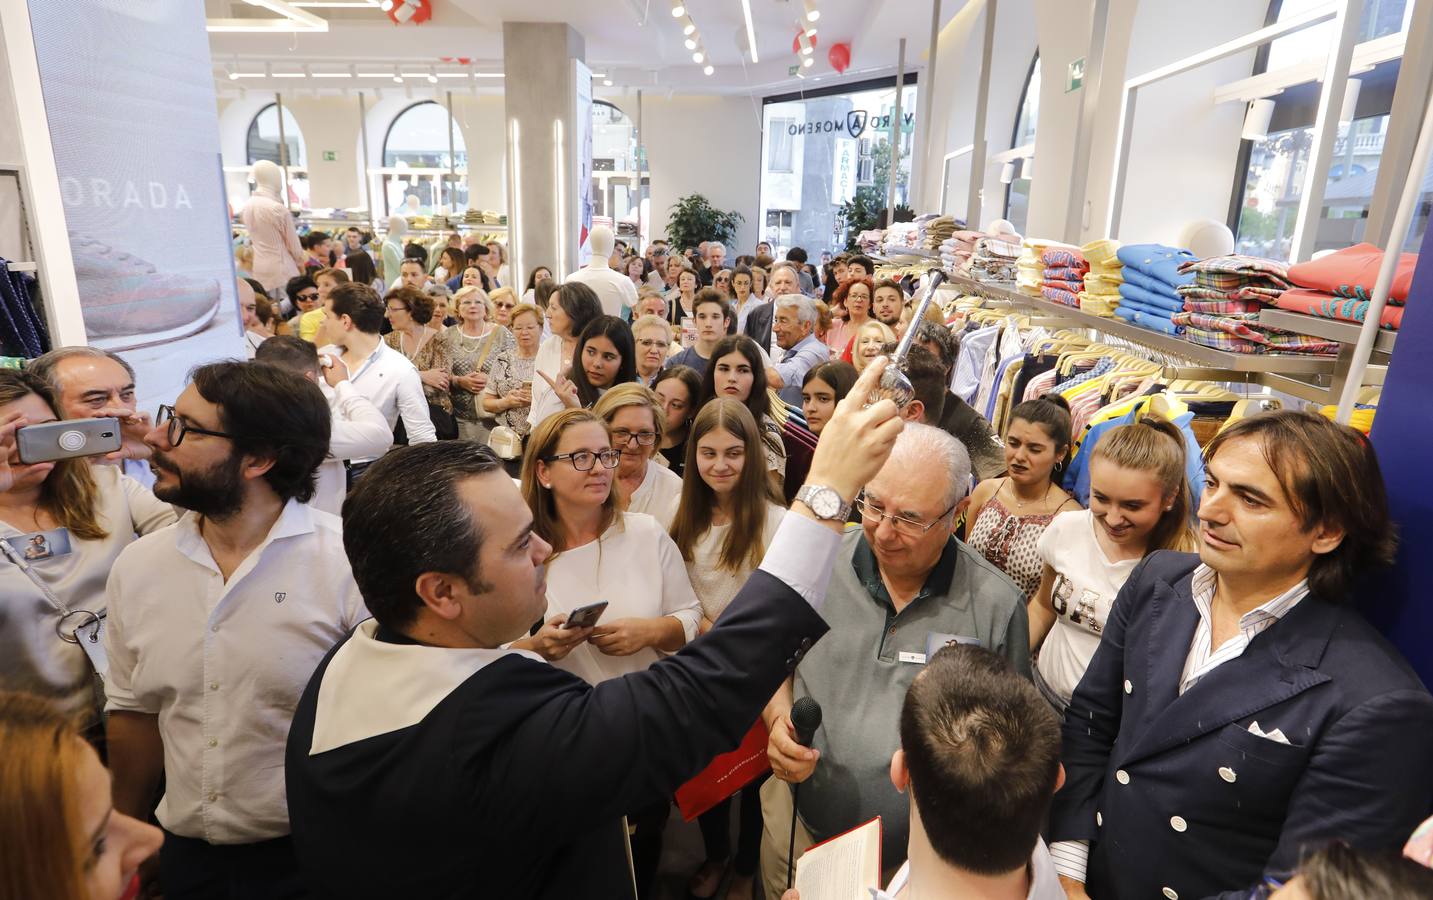 La apertura de la nueva tienda de Álvaro Moreno en Córdoba, en imágenes